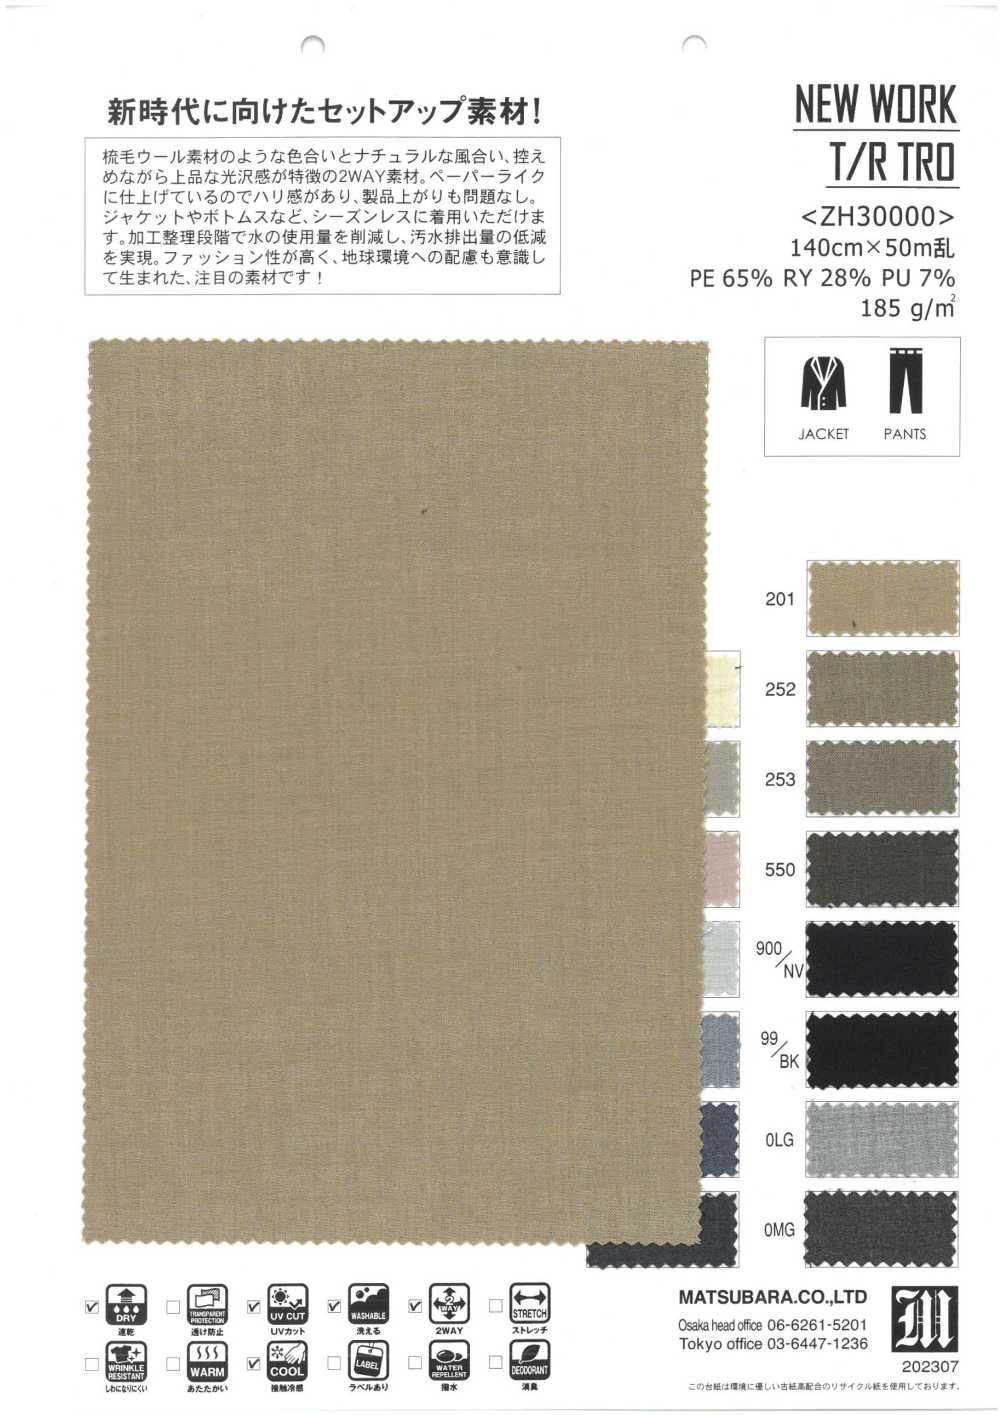 ZH30000 NEW WORK T/R TRO[Textile / Fabric] Matsubara